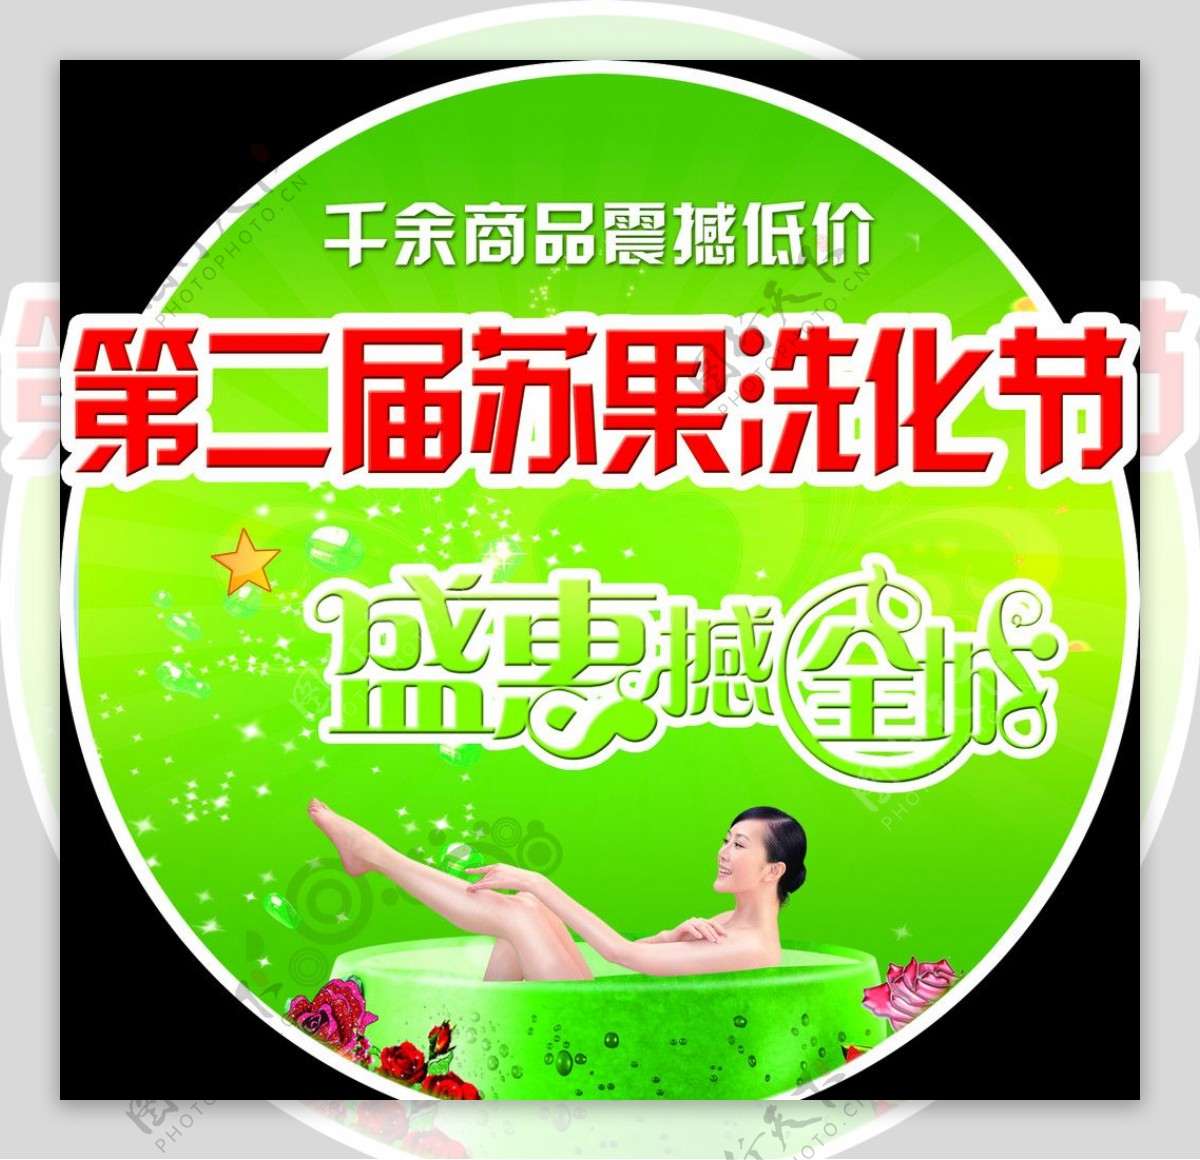 苏果洗化节圆形吊牌宣传广告图片